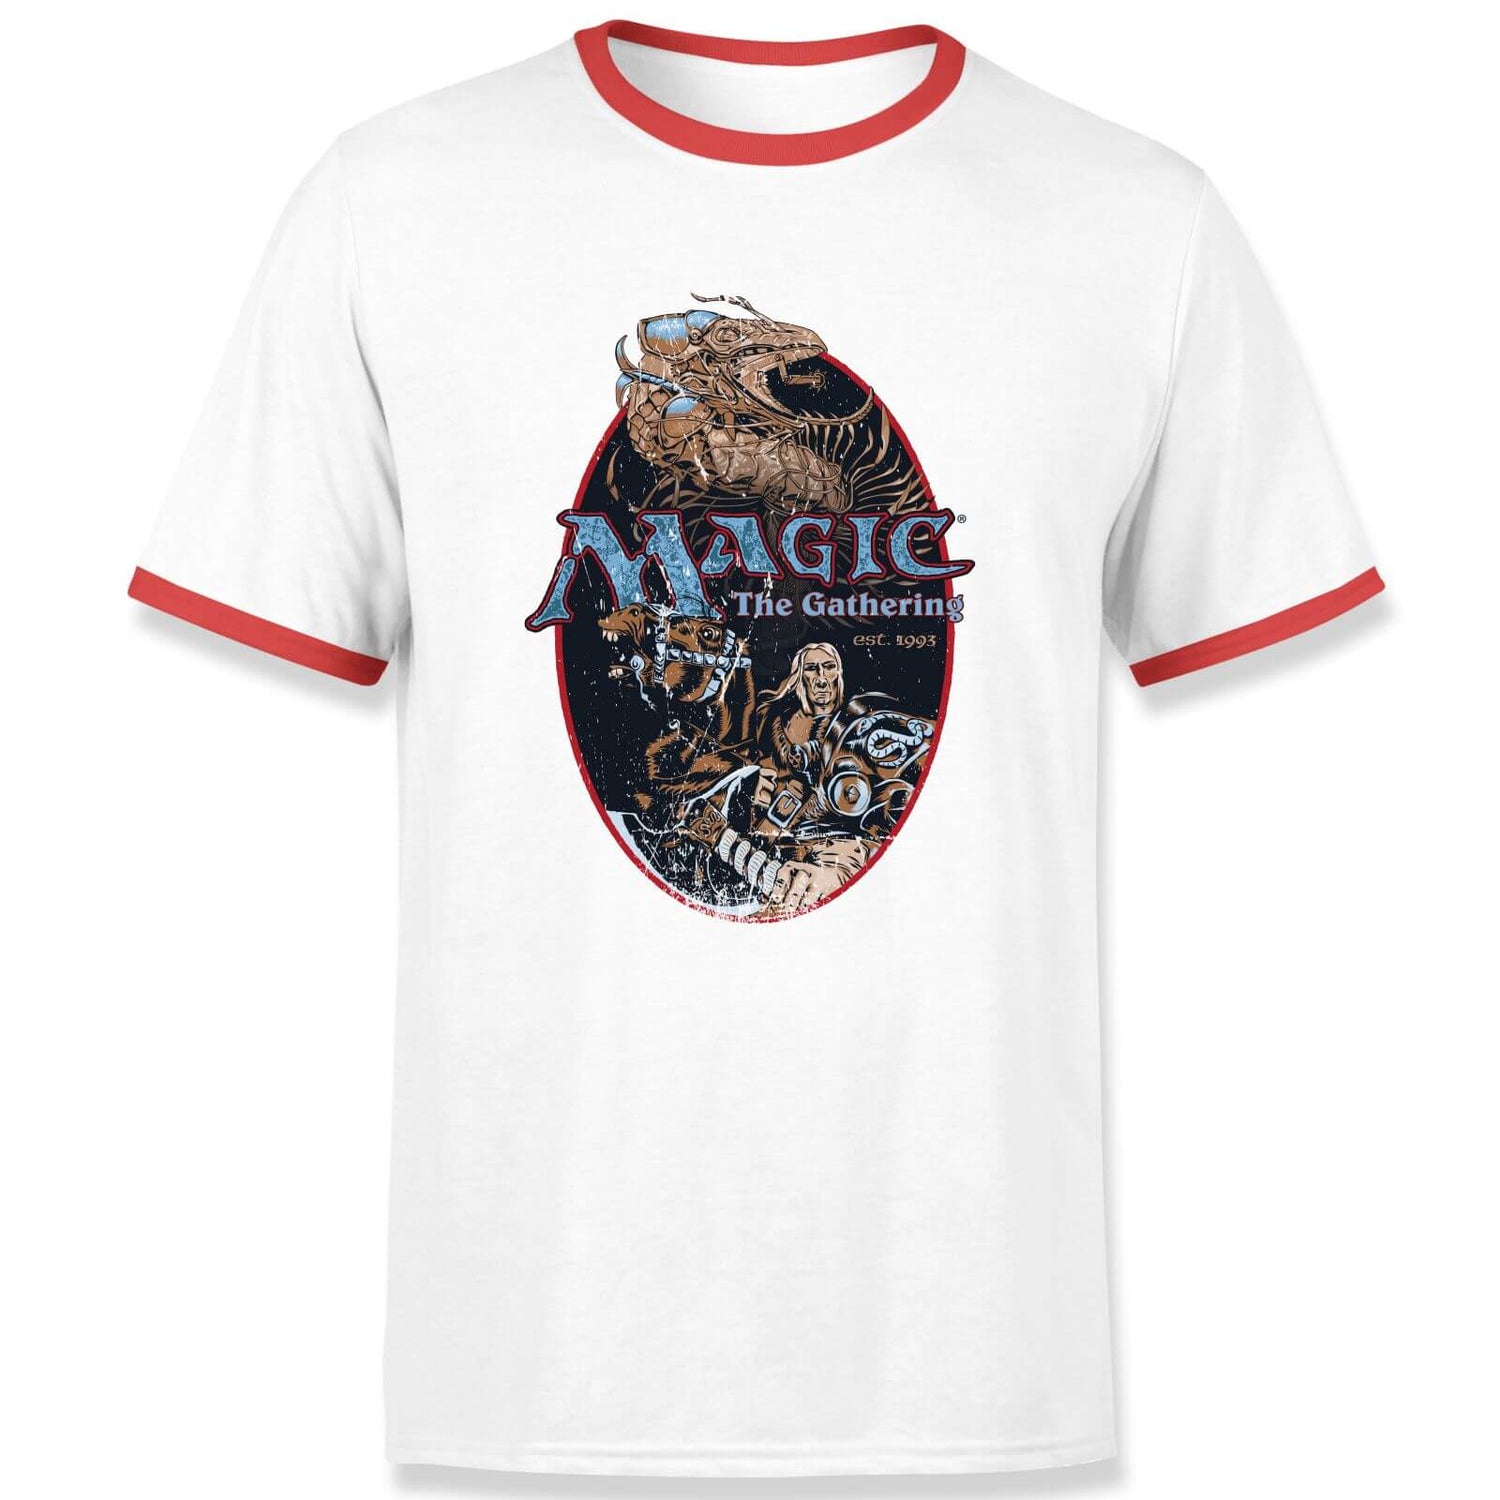 Magic the Gathering Est. 1993 T-Shirt Ringer Unisexe - Blanc / Rouge